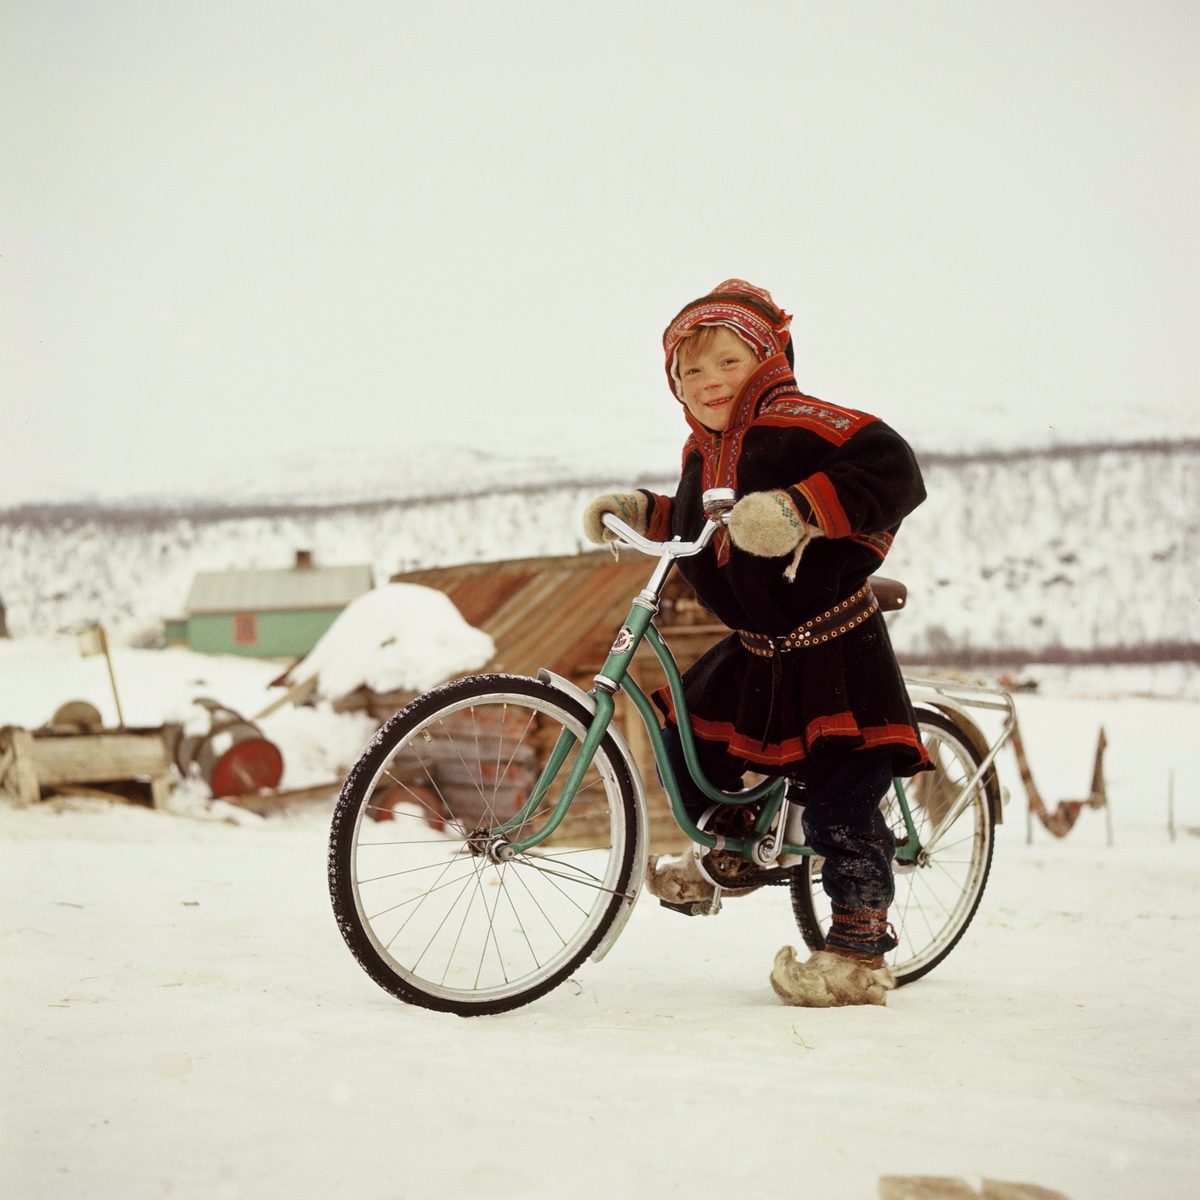 En gutt kledd i tradisjonell samedrakt poserer med sykkel.